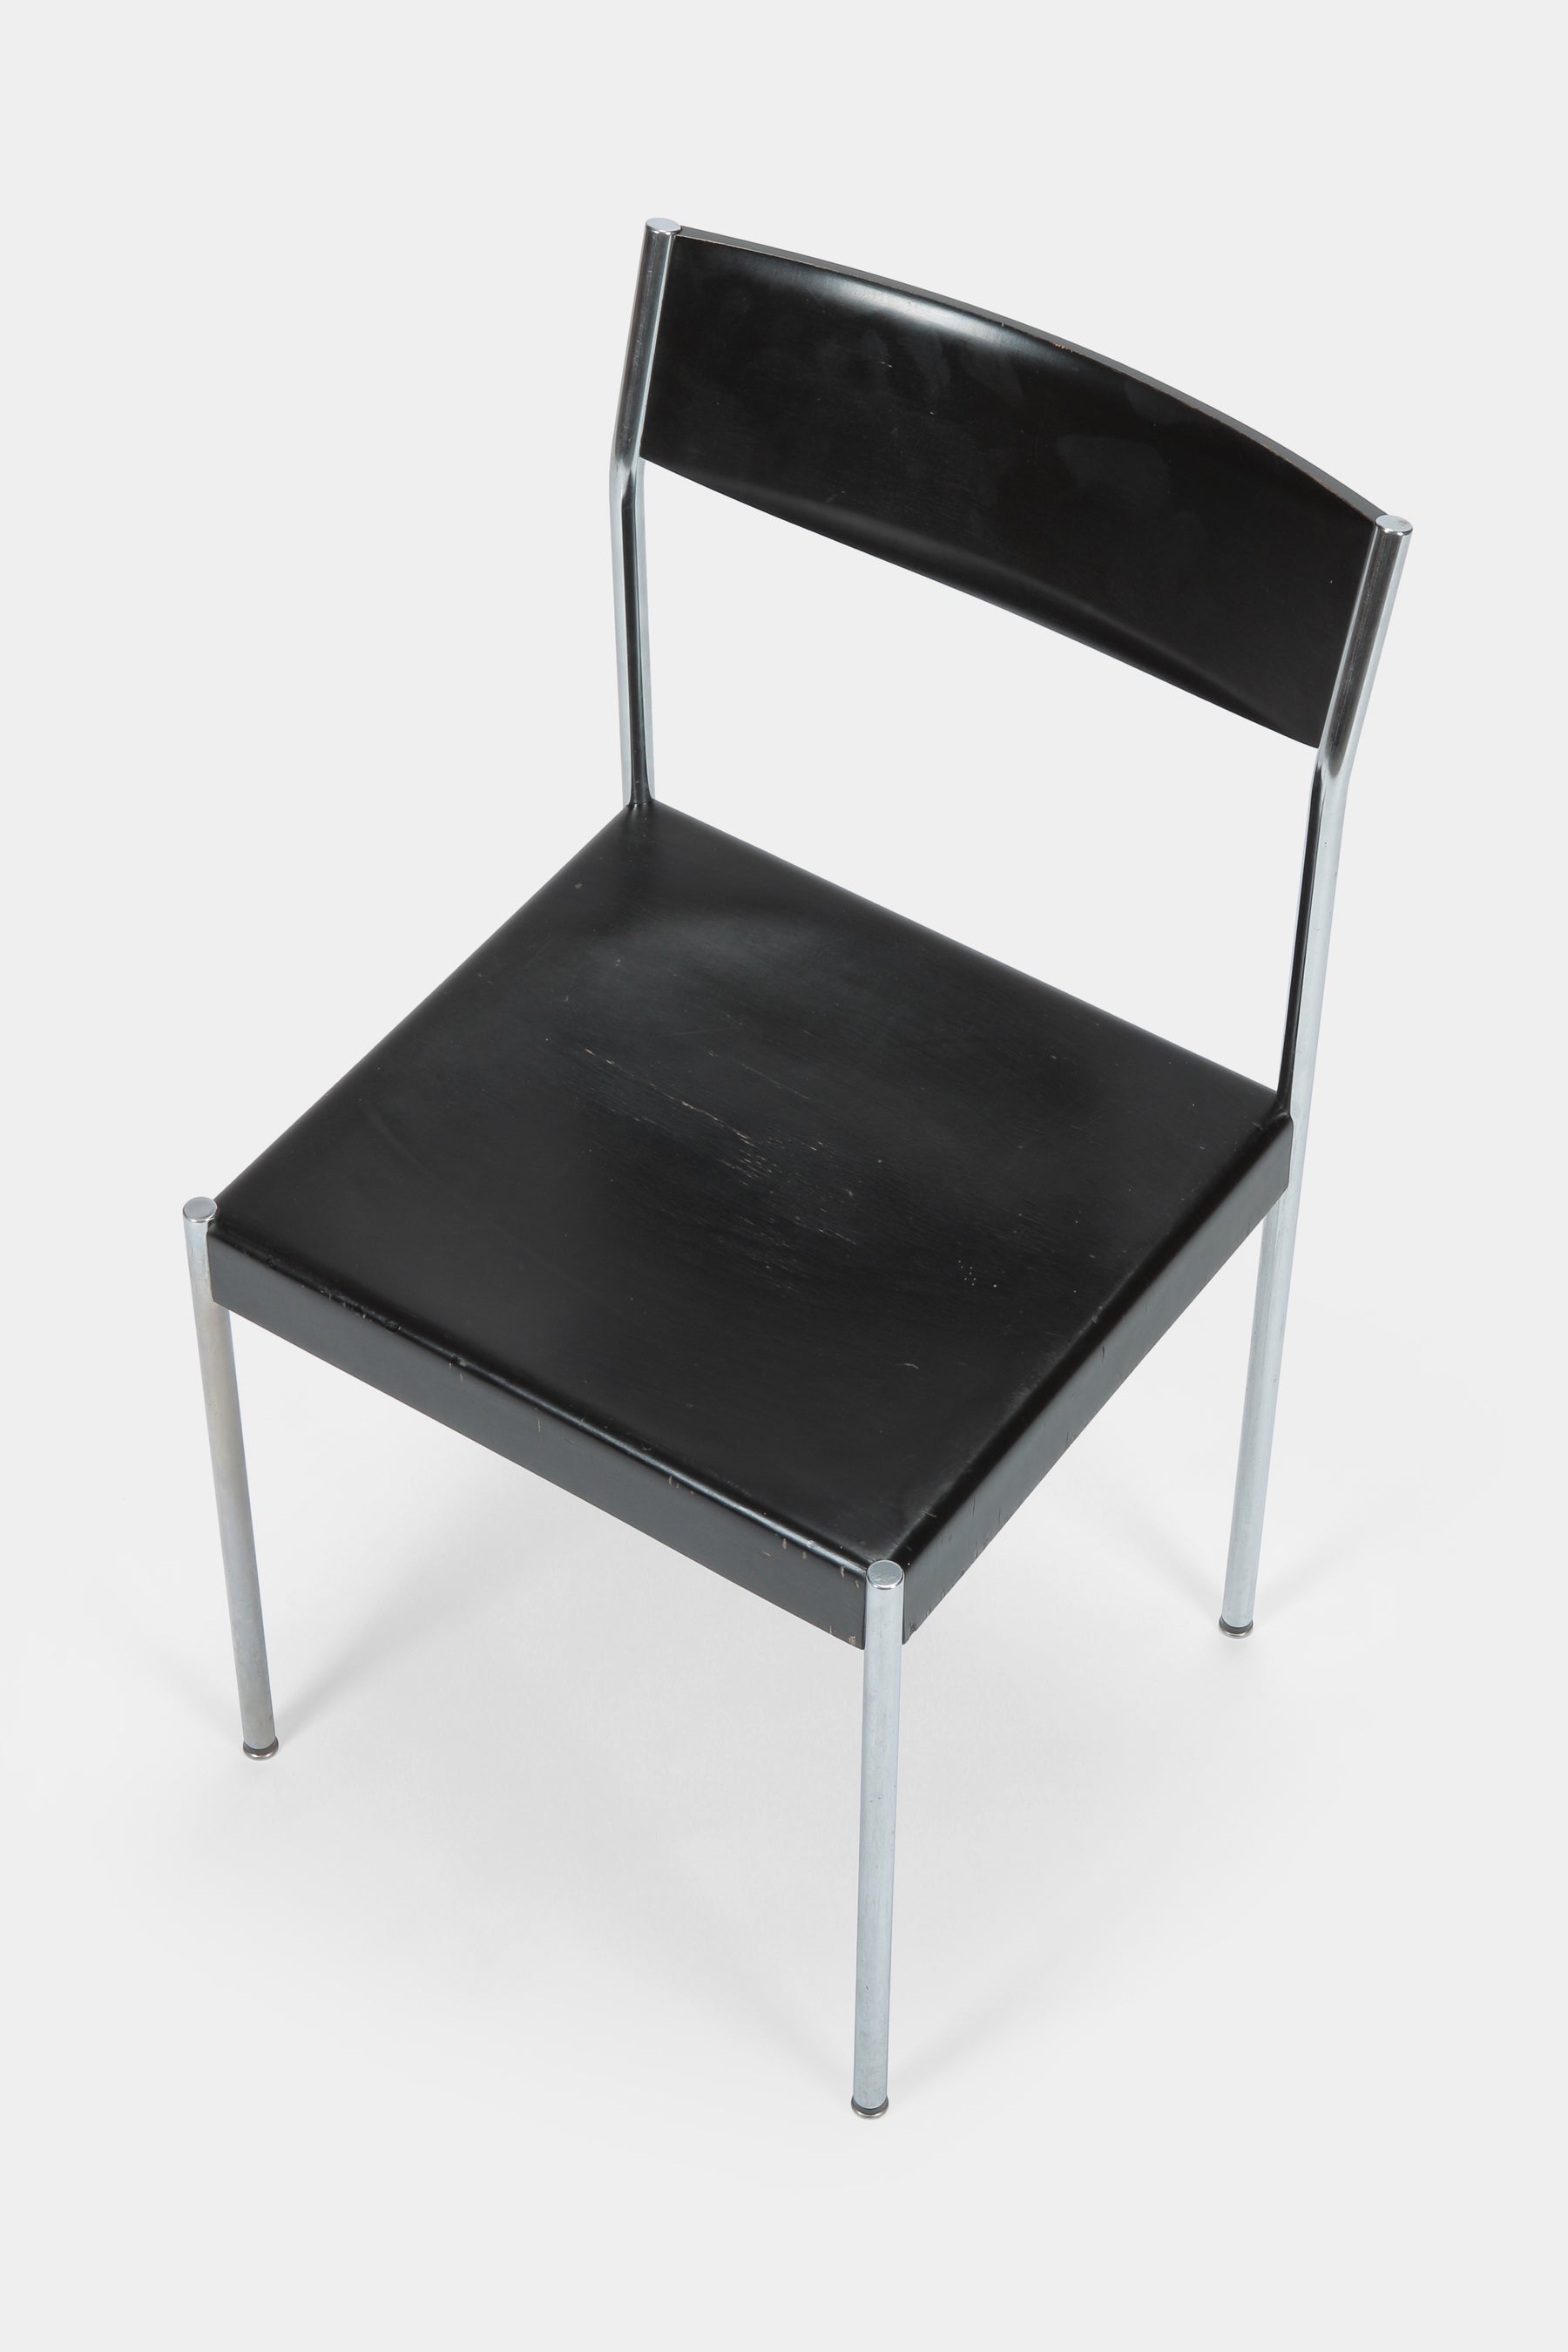 4 Edlef Bandixen chairs Dietiker 60s